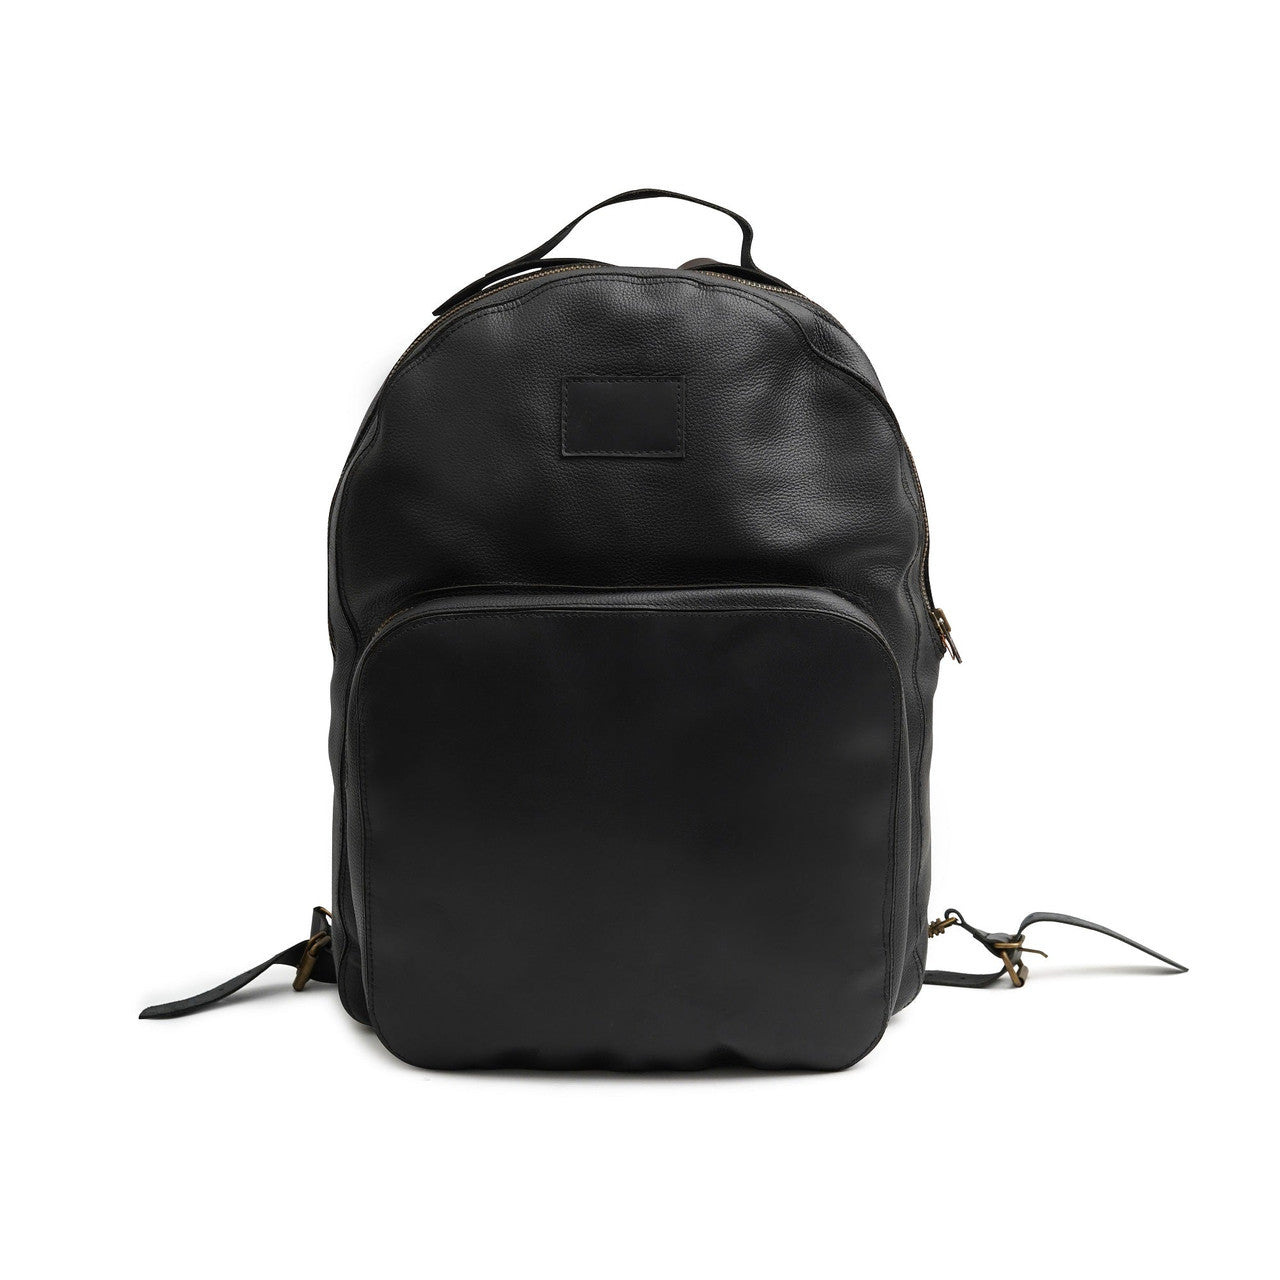 leatrher backpack,black backpack,laptop backpack,leather laptop backpack,black laptop backpack